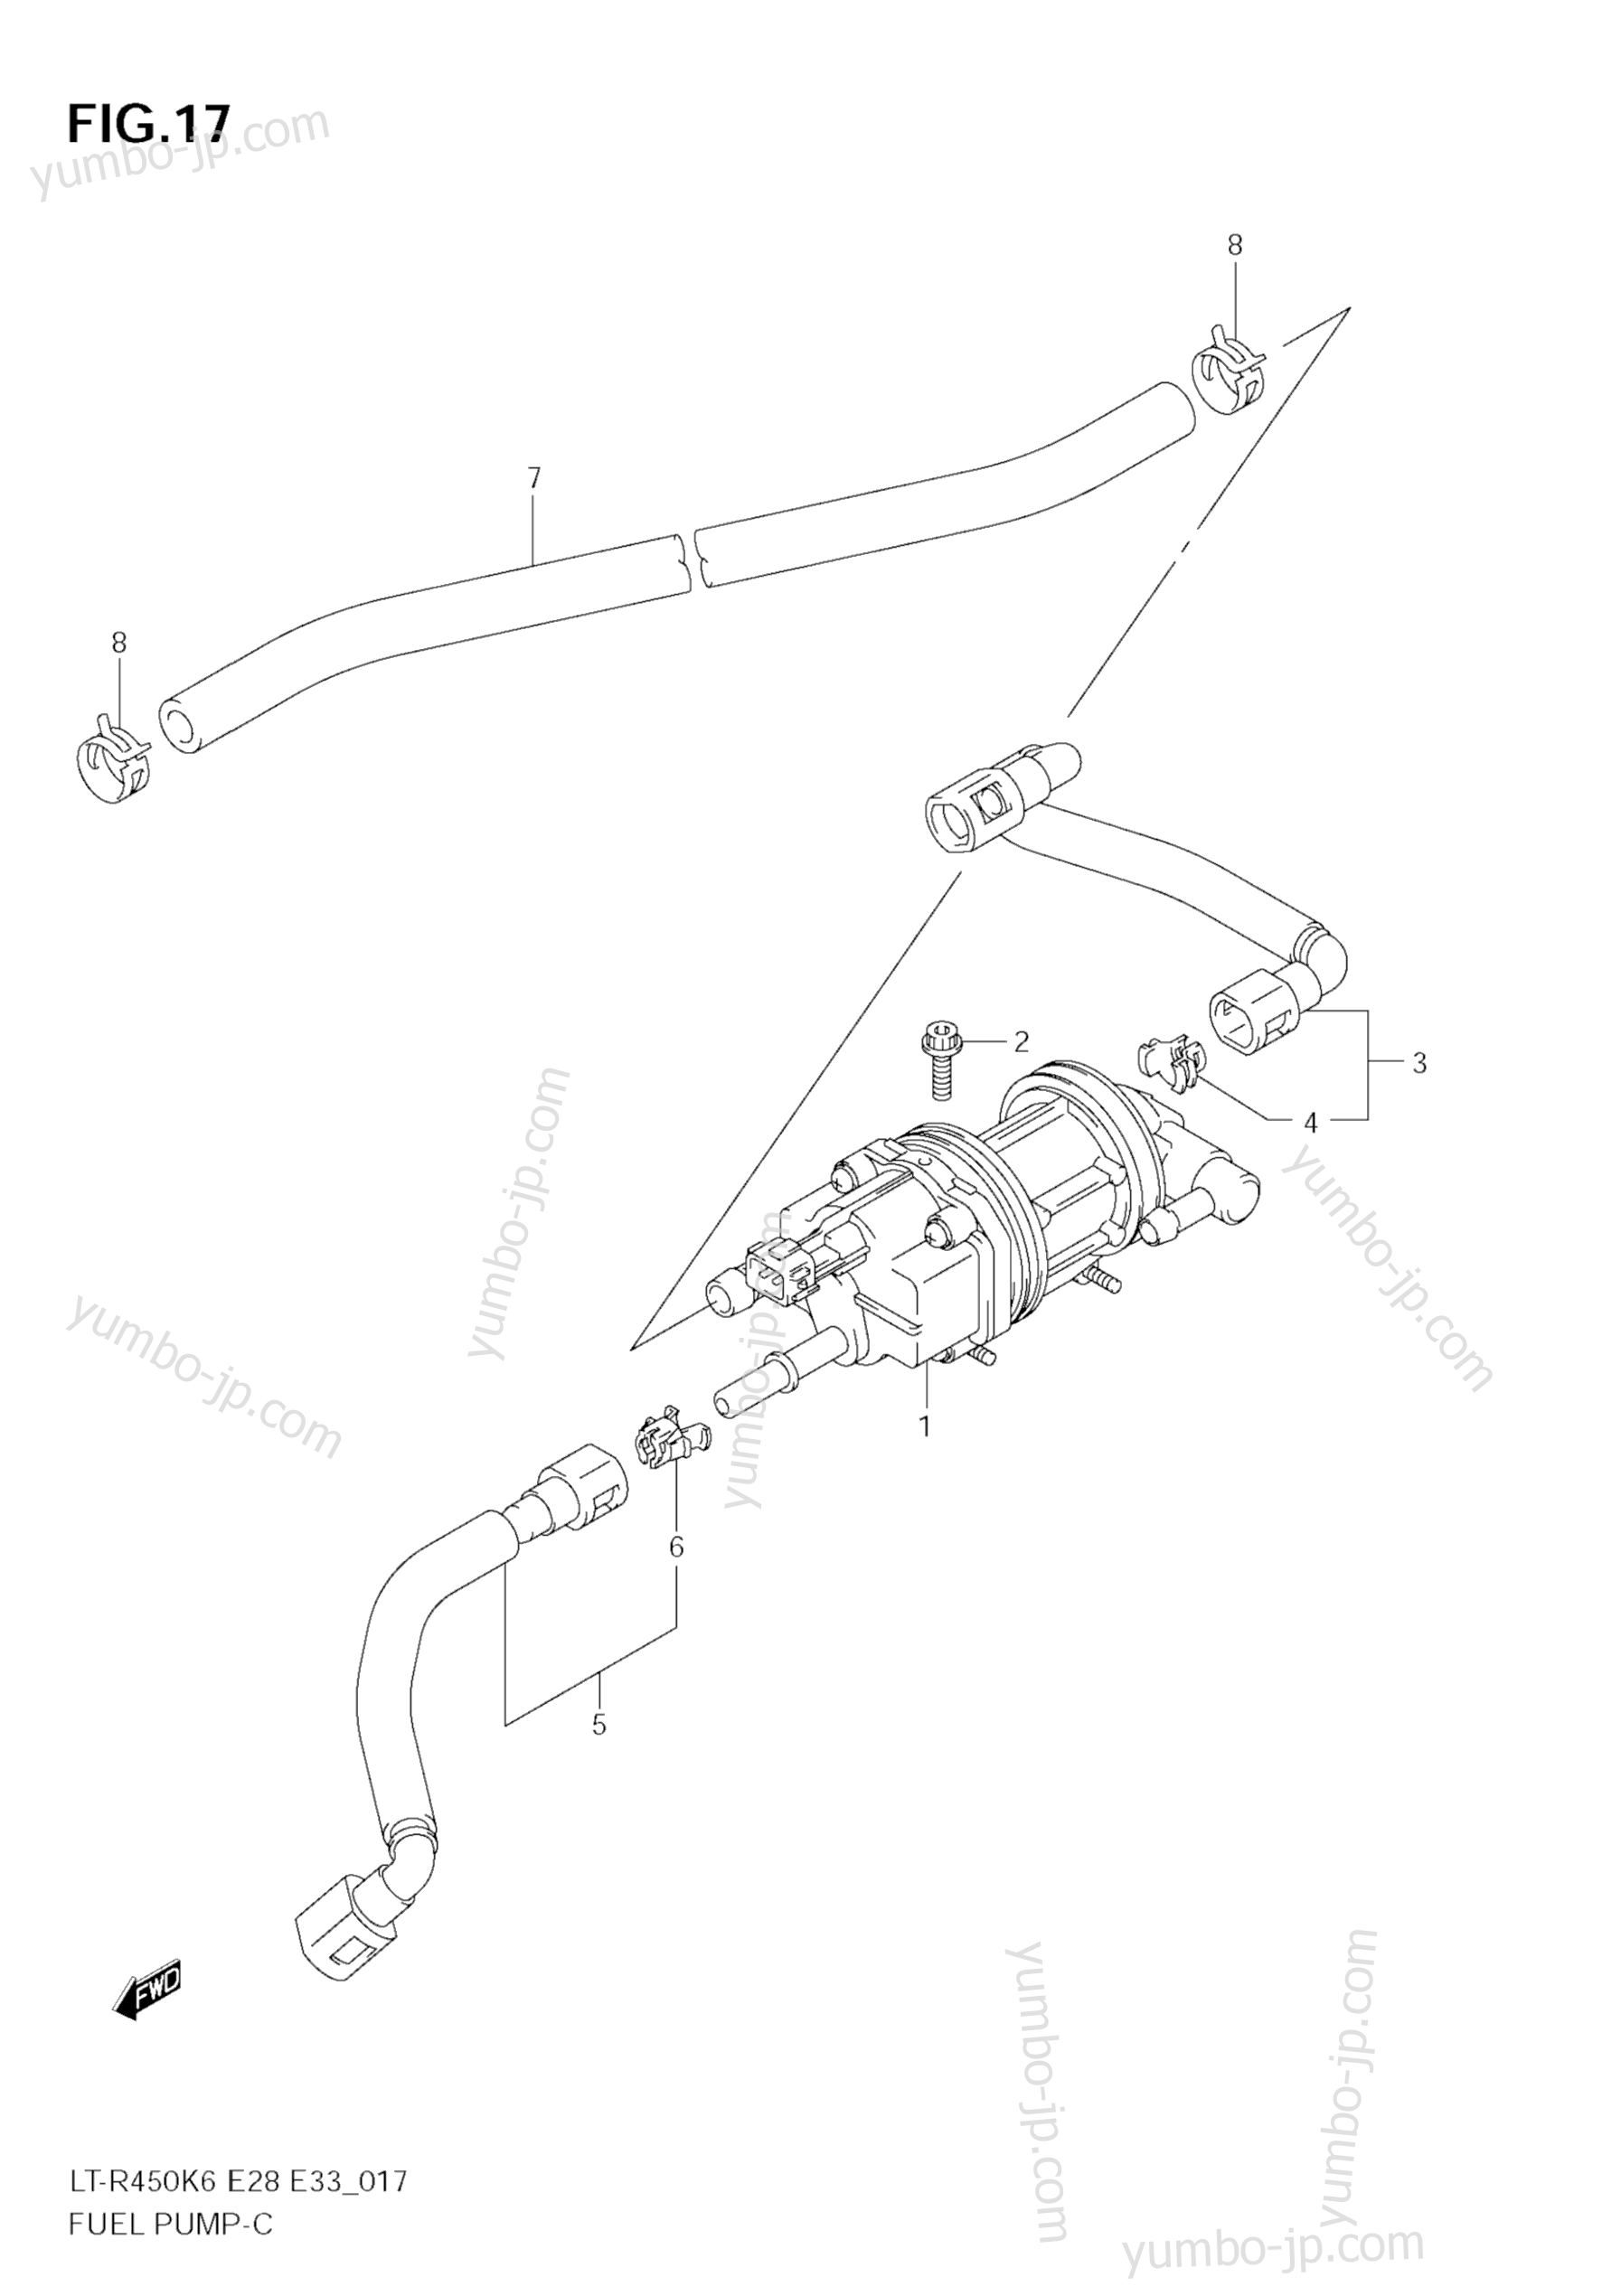 Топливный насос для квадроциклов SUZUKI QuadRacer (LT-R450) 2006 г.